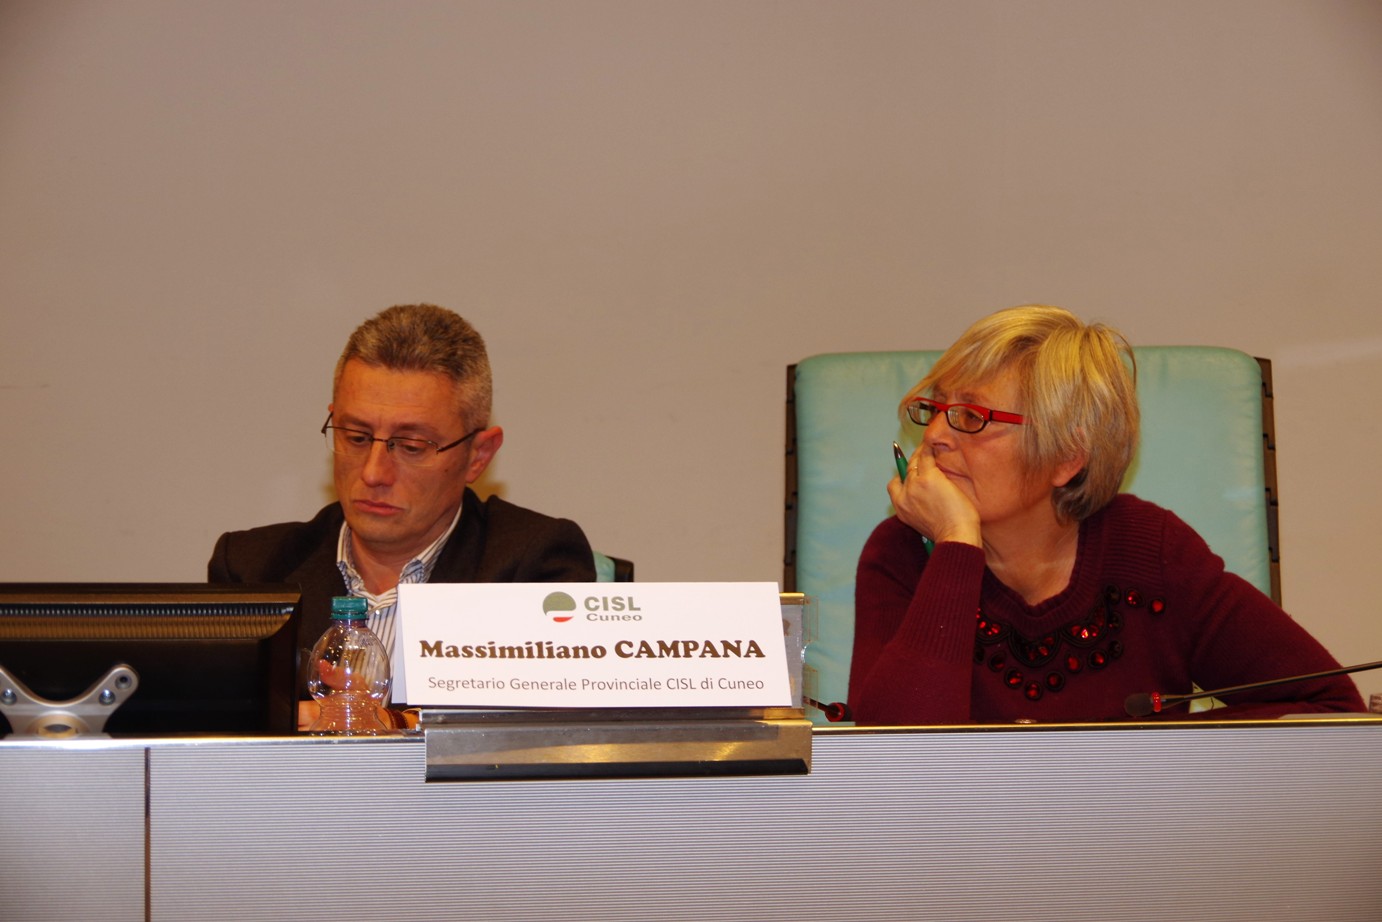 La segretaria generale Cisl, Annamaria Furlan con il segretario generale Cisl Cuneo, Massimiliano Campana al Convegno sulle pensioni svoltosi a Cuneo nello scorso dicembre